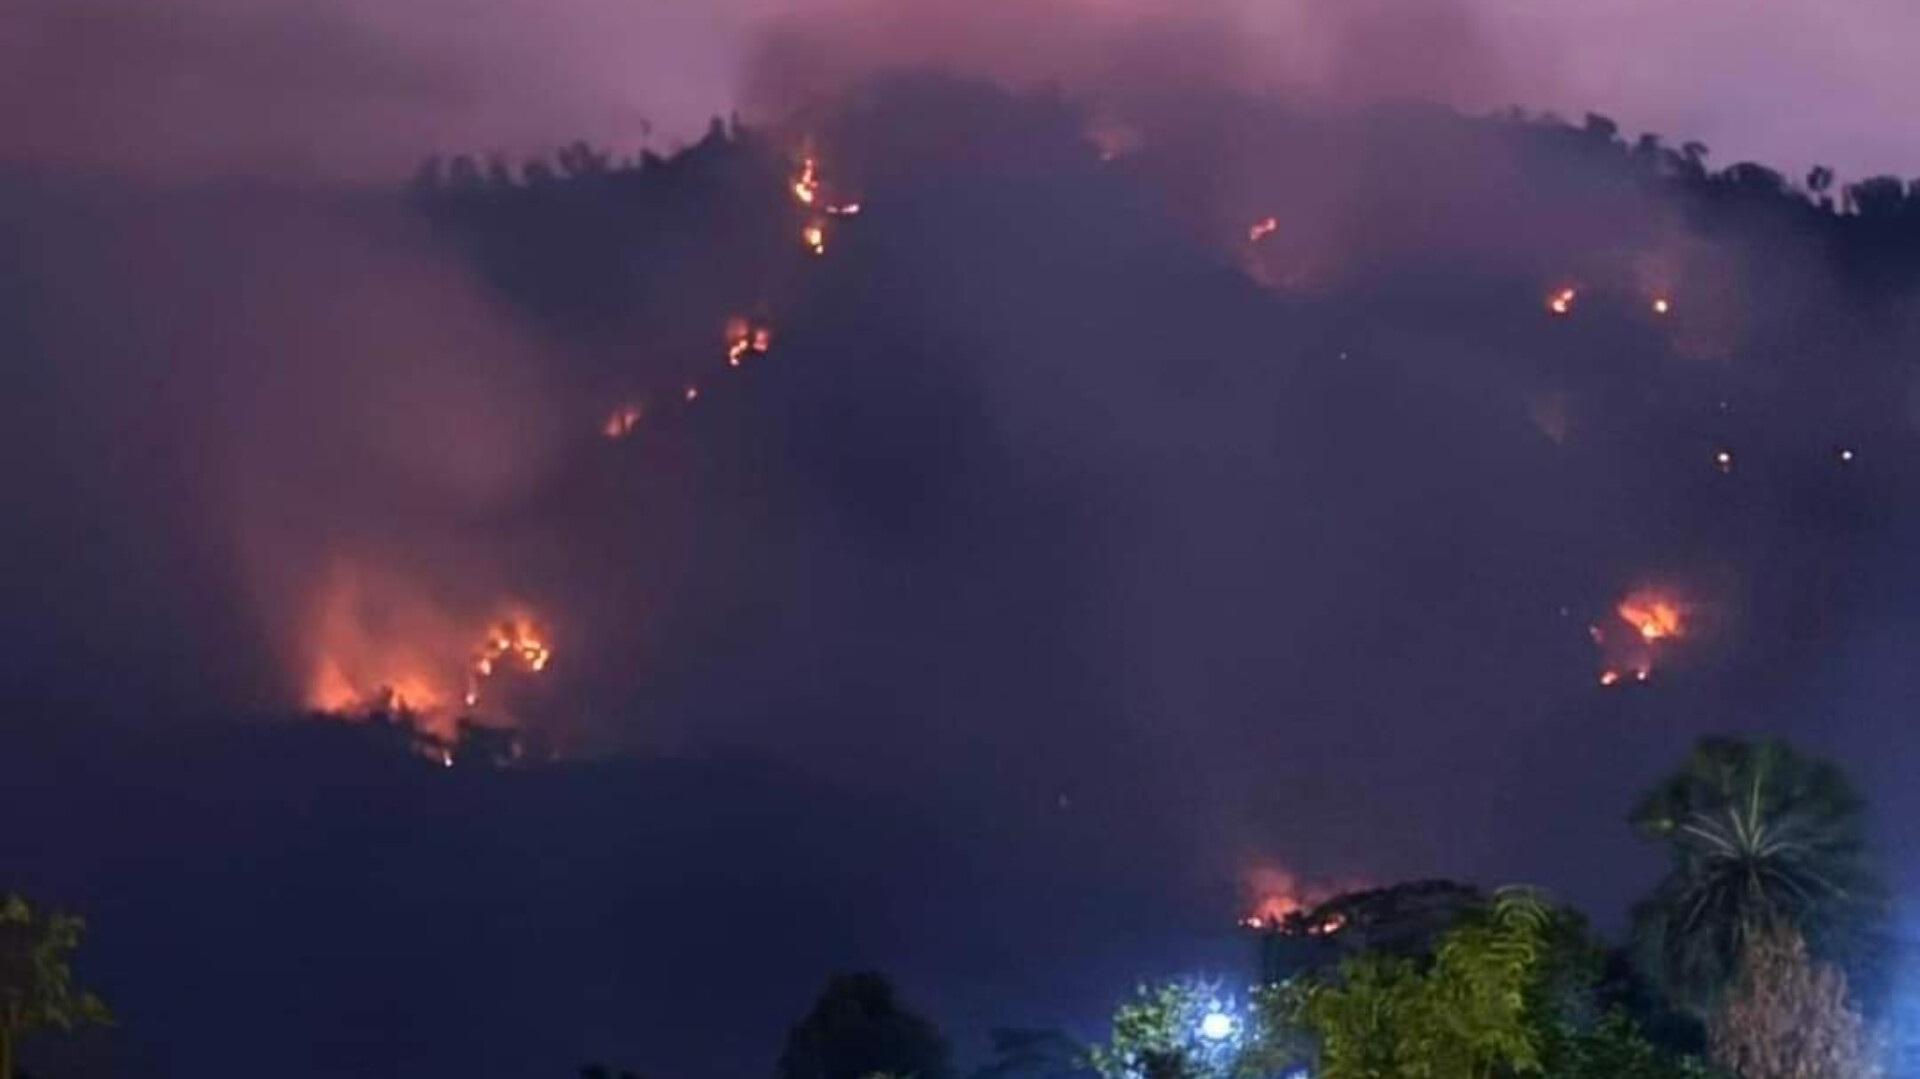 Đang cháy lớn trên núi Cô Tô kèm nhiều tiếng nổ lớn như bom - 1